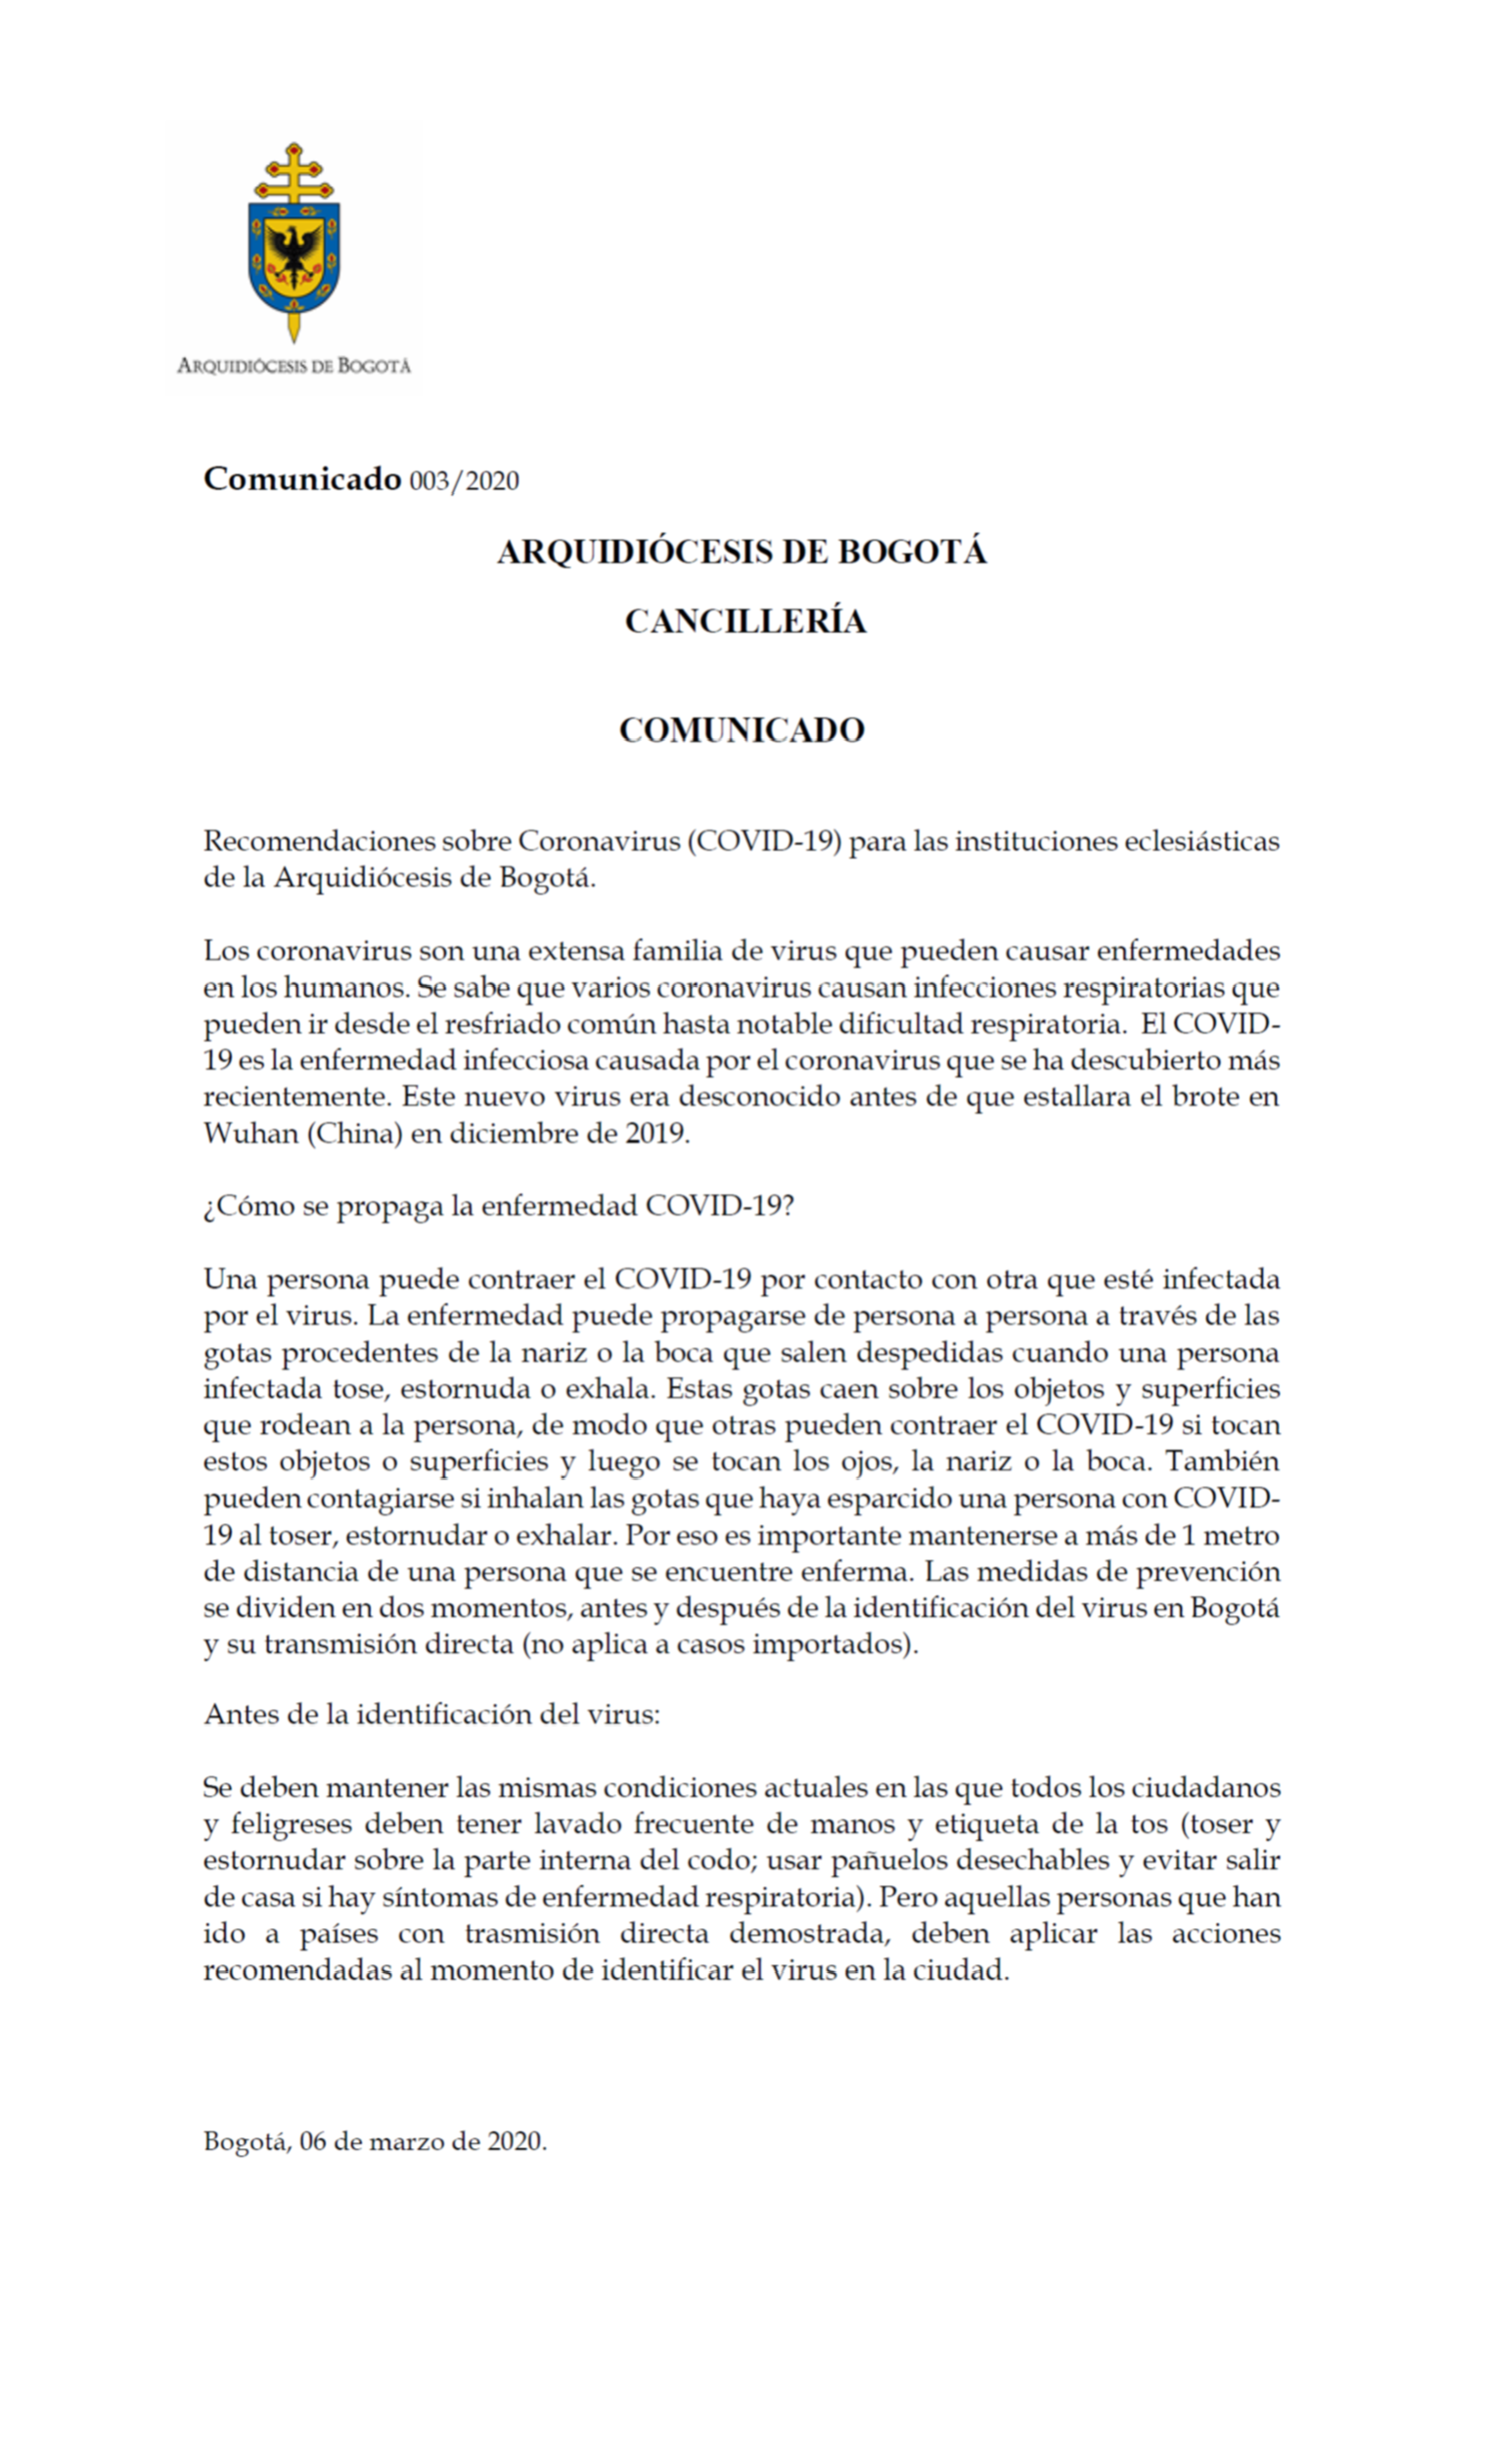 Recomendaciones sobre Coronavirus (COVID-19) para las instituciones eclesiásticas de la arquidiócesis de Bogotá